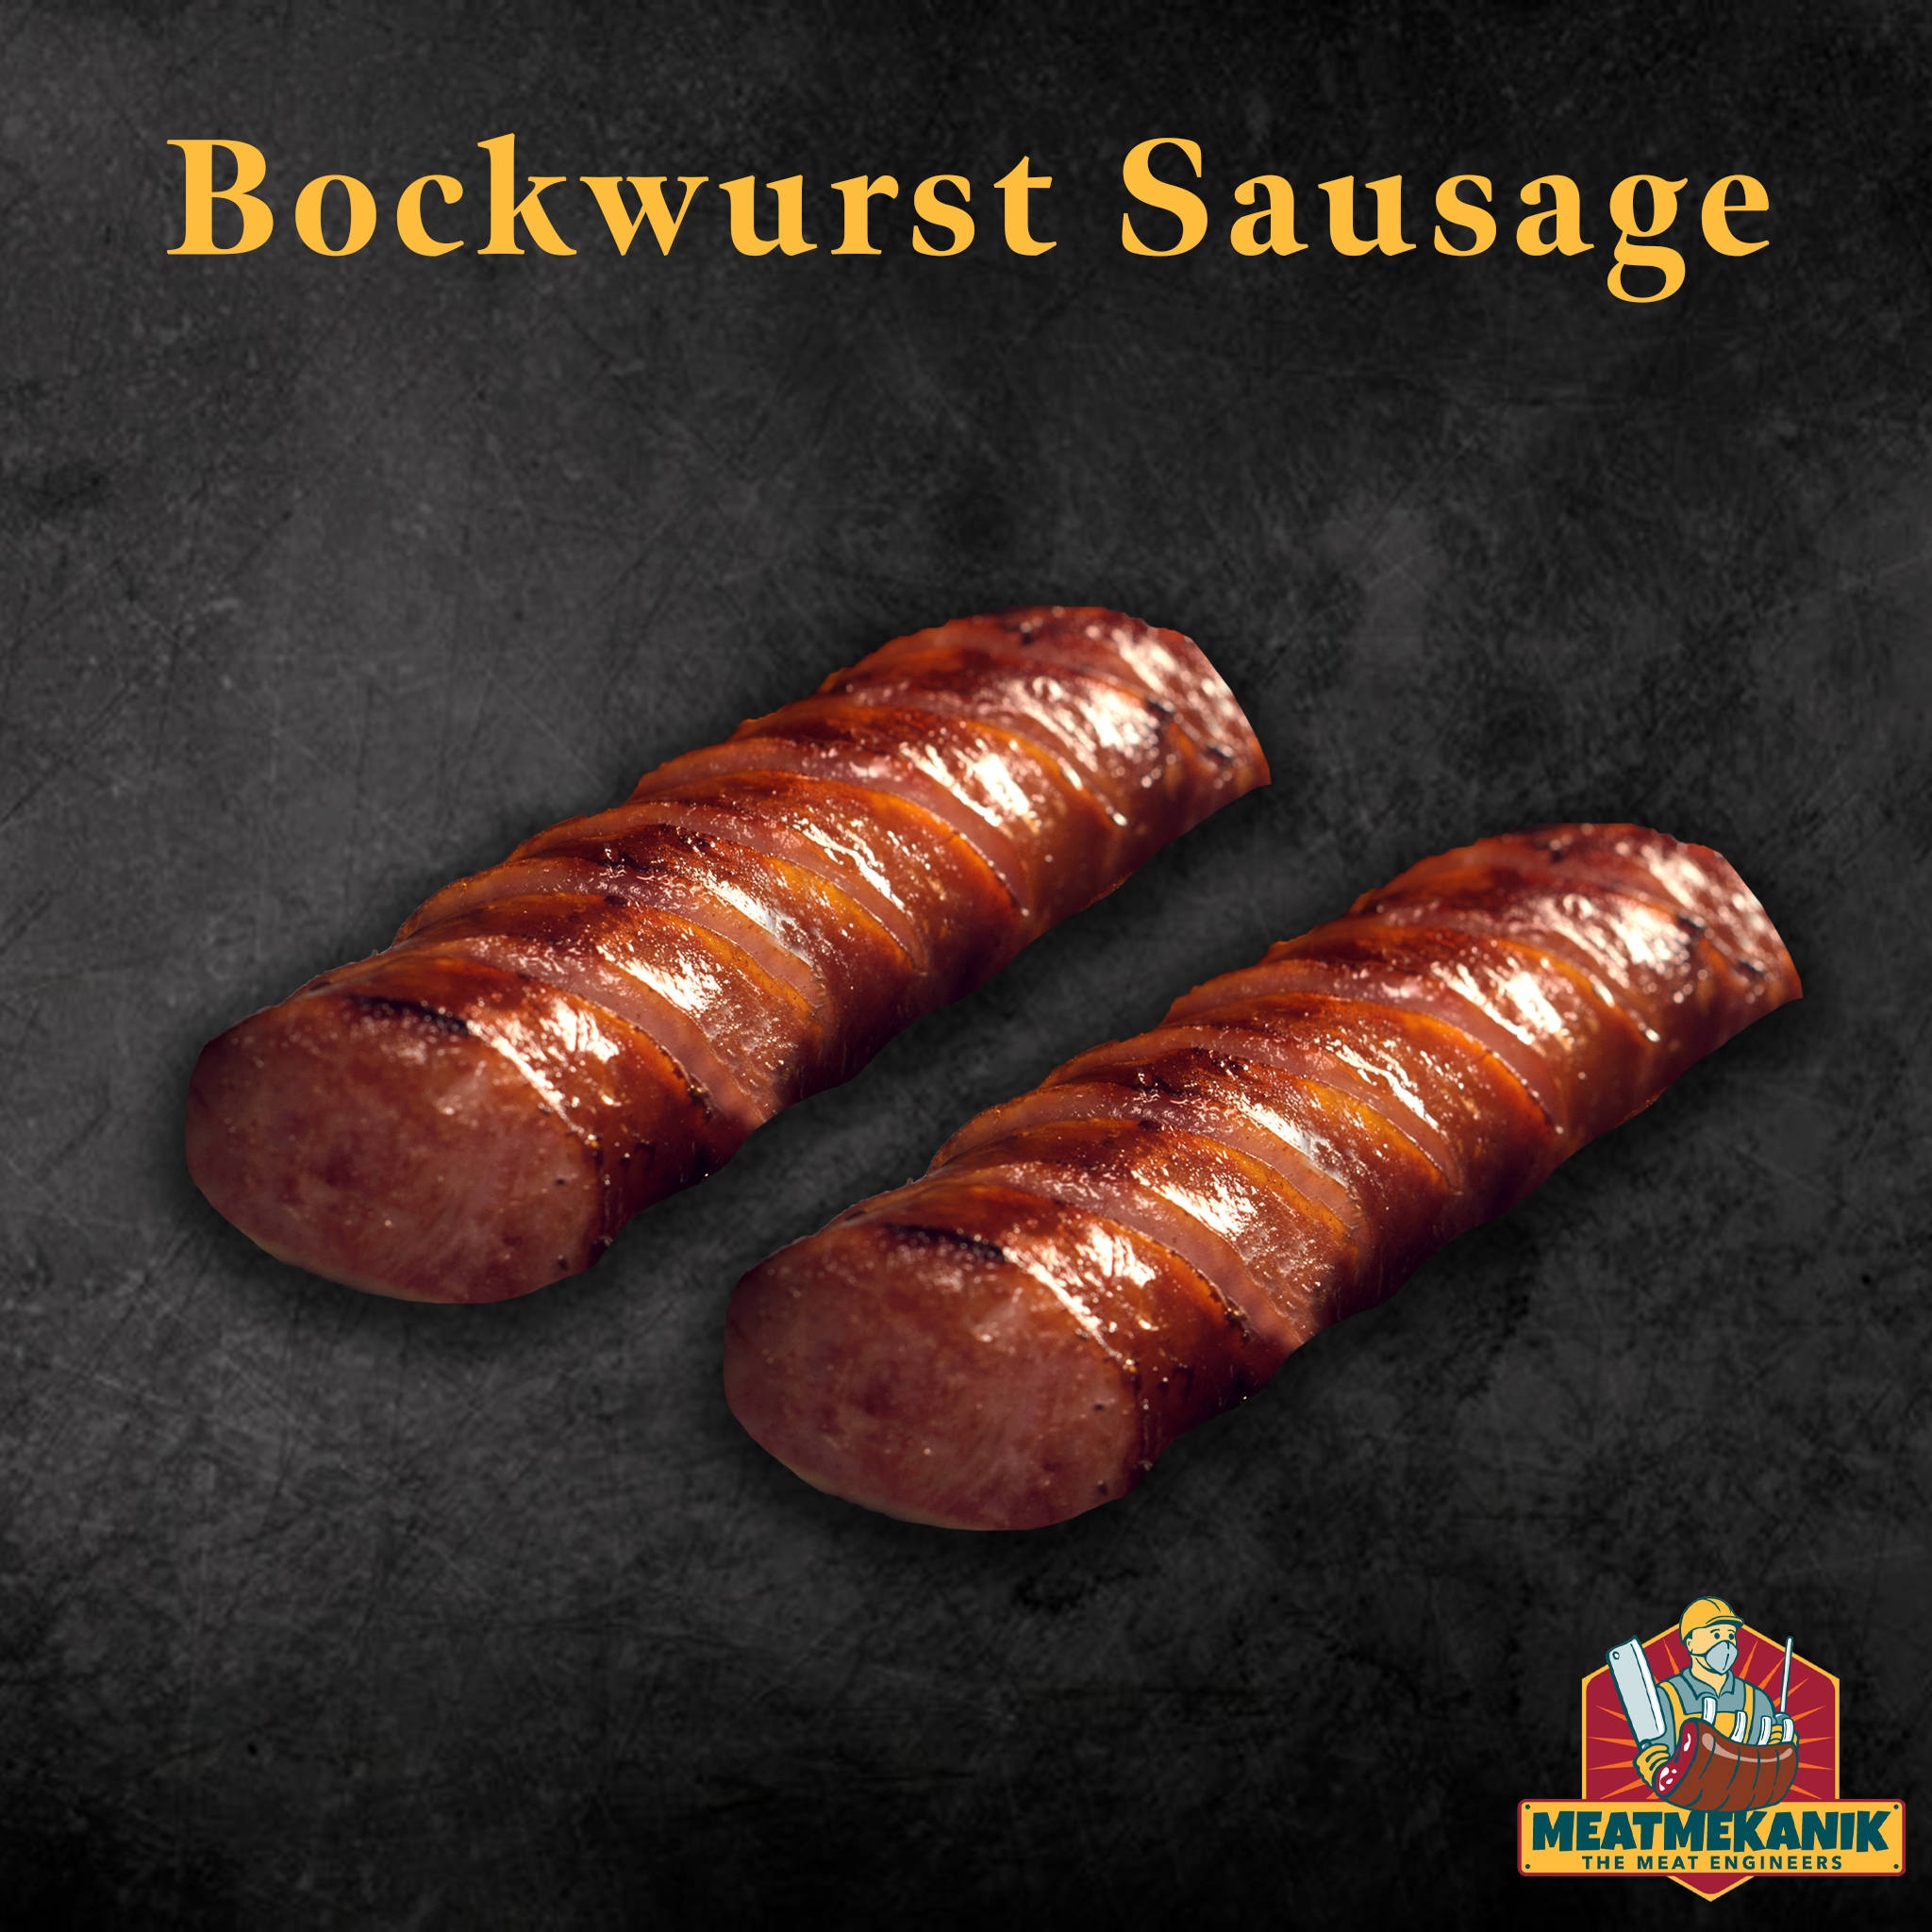 Bockwurst Sausage - Meat Mekanik